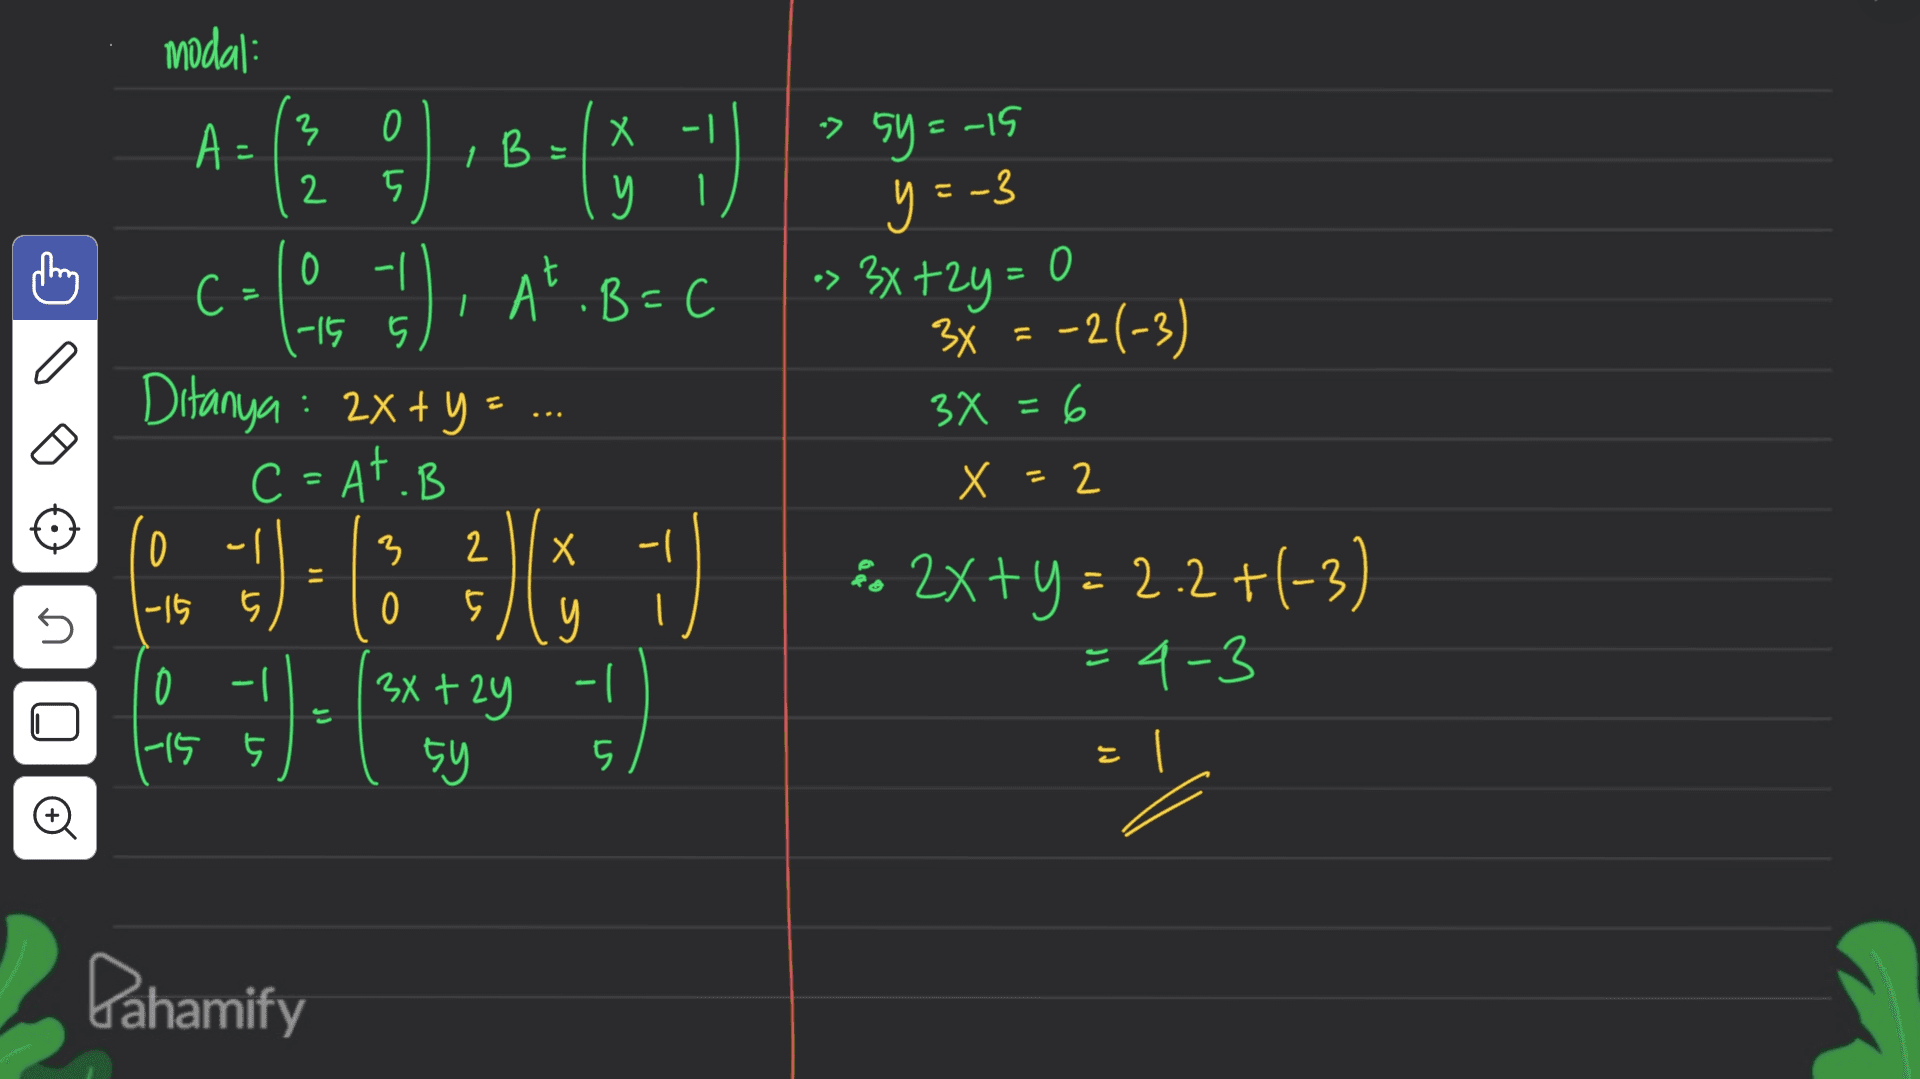 modal: 3 0 A: B : - ) x » 2 у 1 » sy=-15 y=-3 0 0 -| -15 5 с !). At. B=( °C Ditanya : 2x + y = C=AT.B 3x+2y= 3x = -2(-3) 3x = 6 6 = X = 2 3 Х 0 -15 - 2 5 & 5 0 + ) ( )( ) . + 2 (- ) n * 2x+y = 2.2+(-3) = 4-3 y -1 ( 3x +2y 0 1-15 5y 5 © Pahamify 